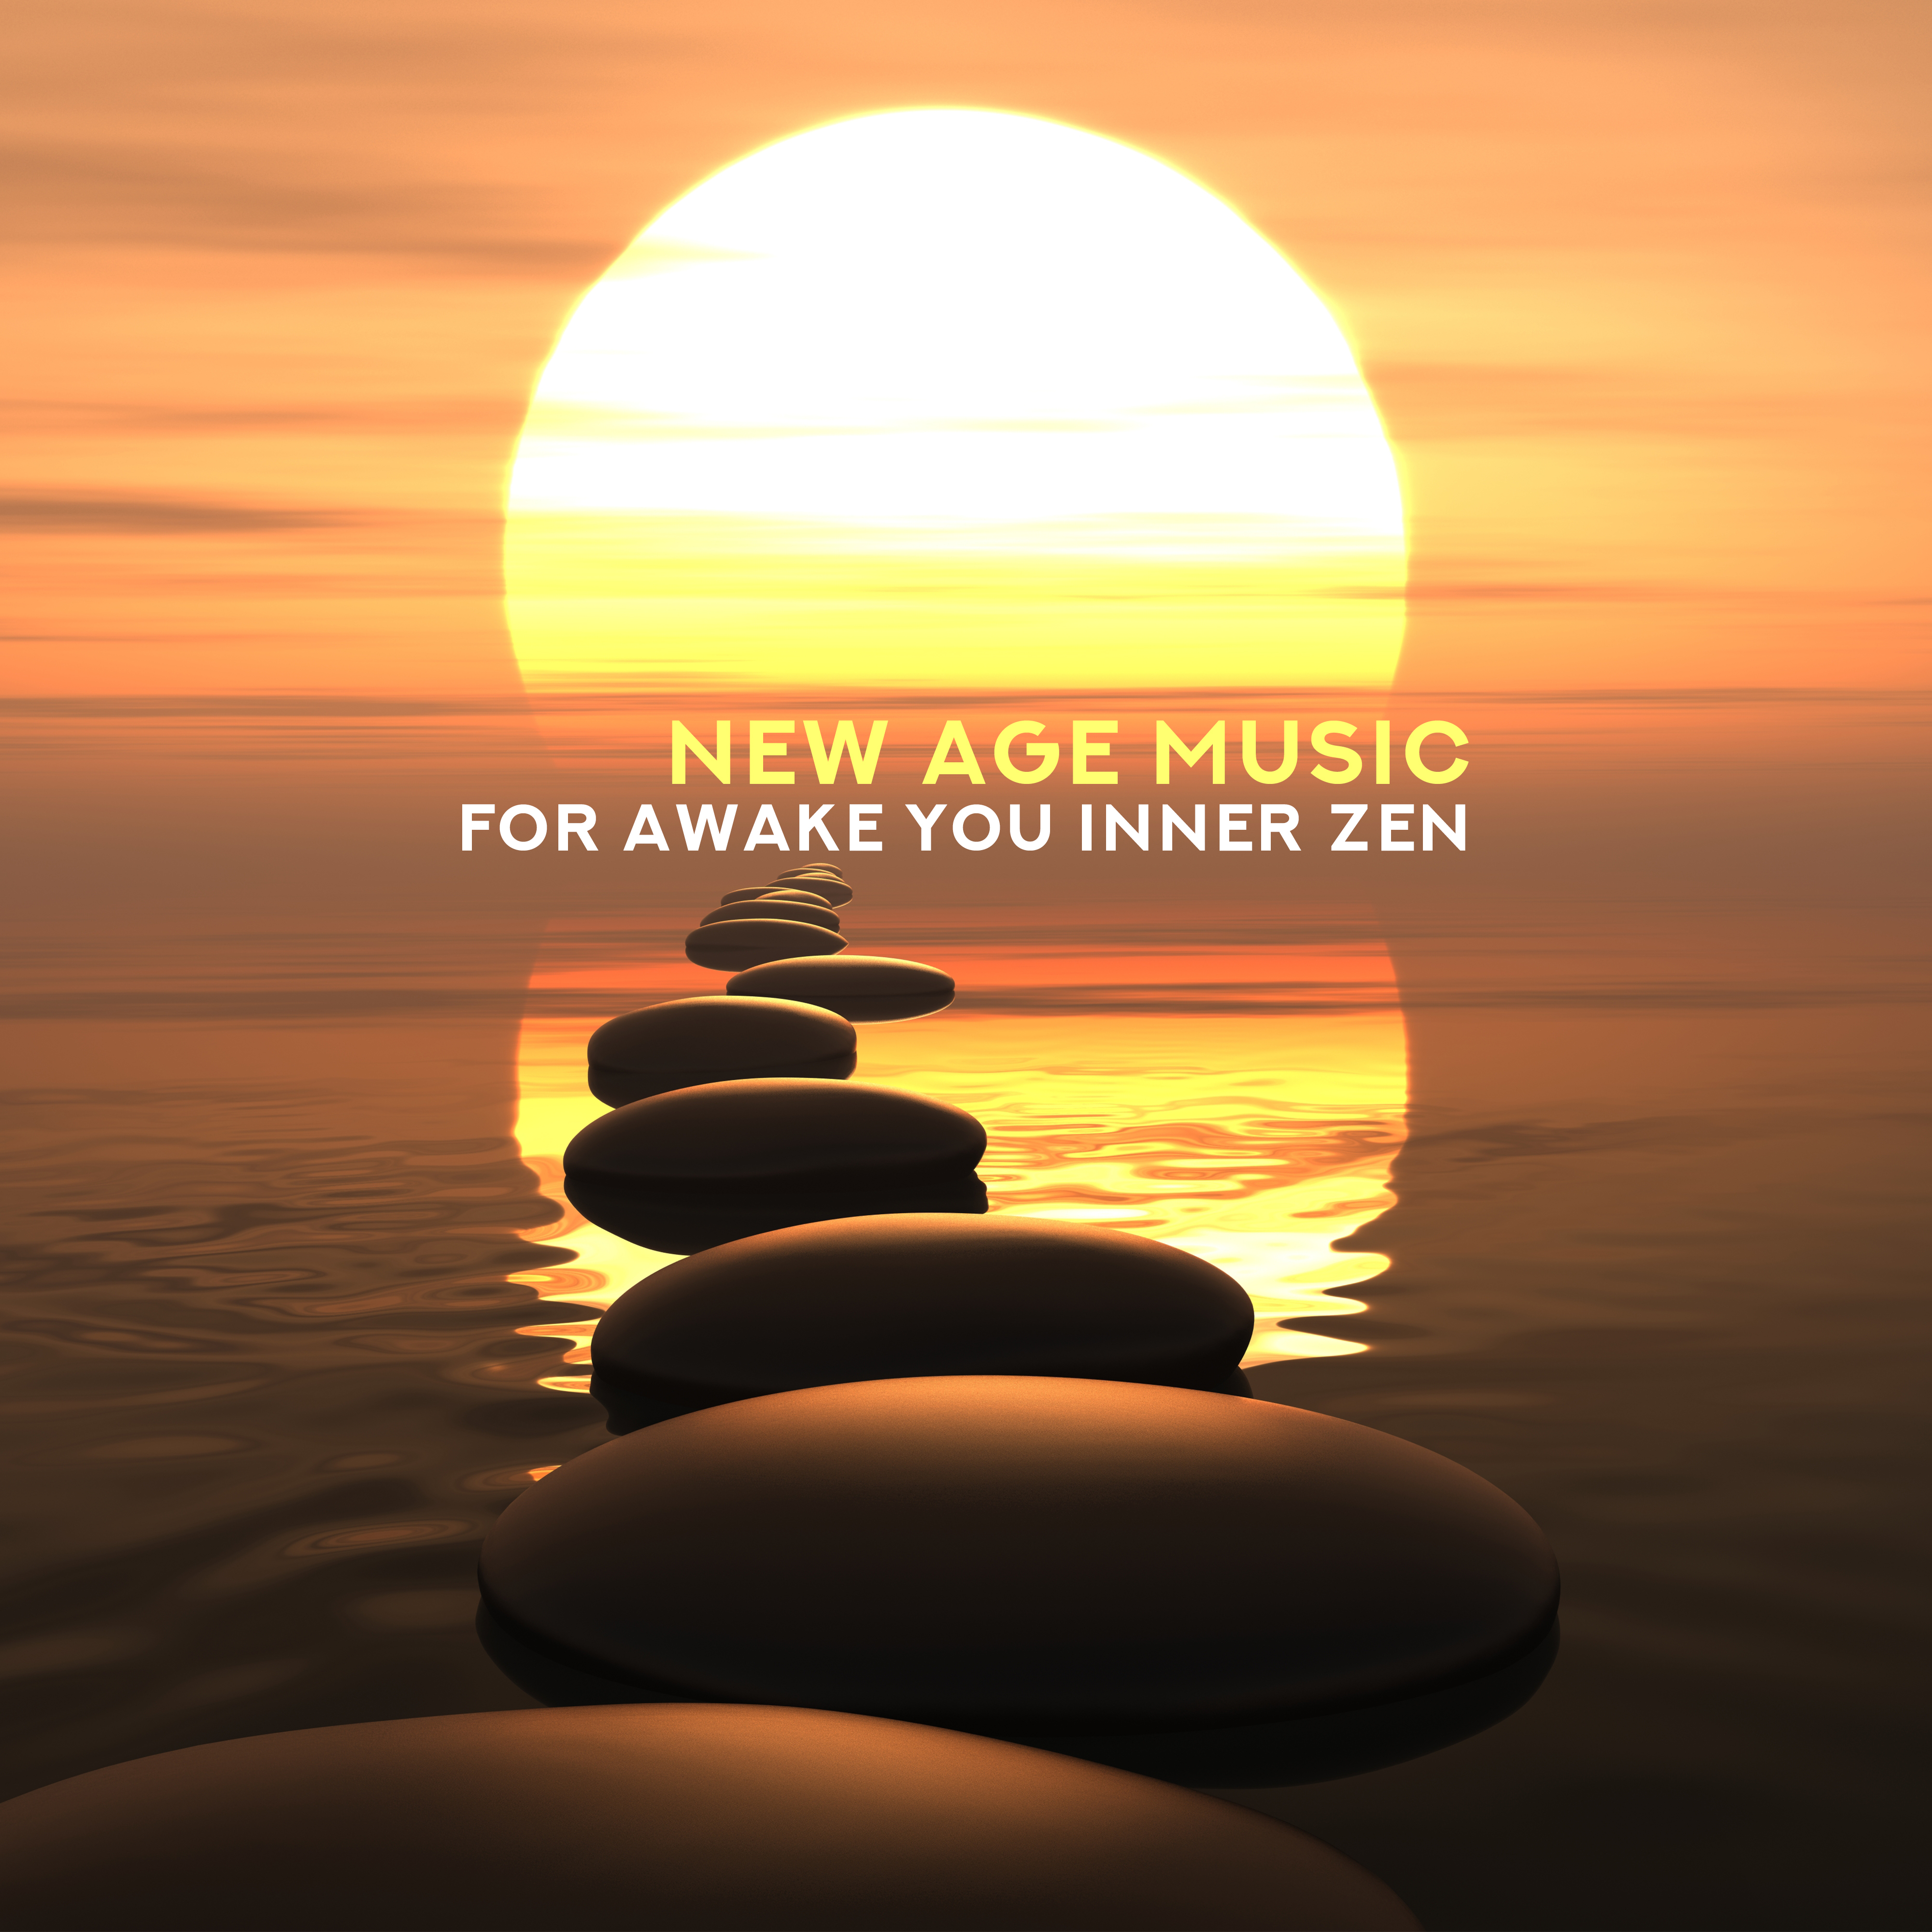 New Age Music fot Awake You Inner Zen